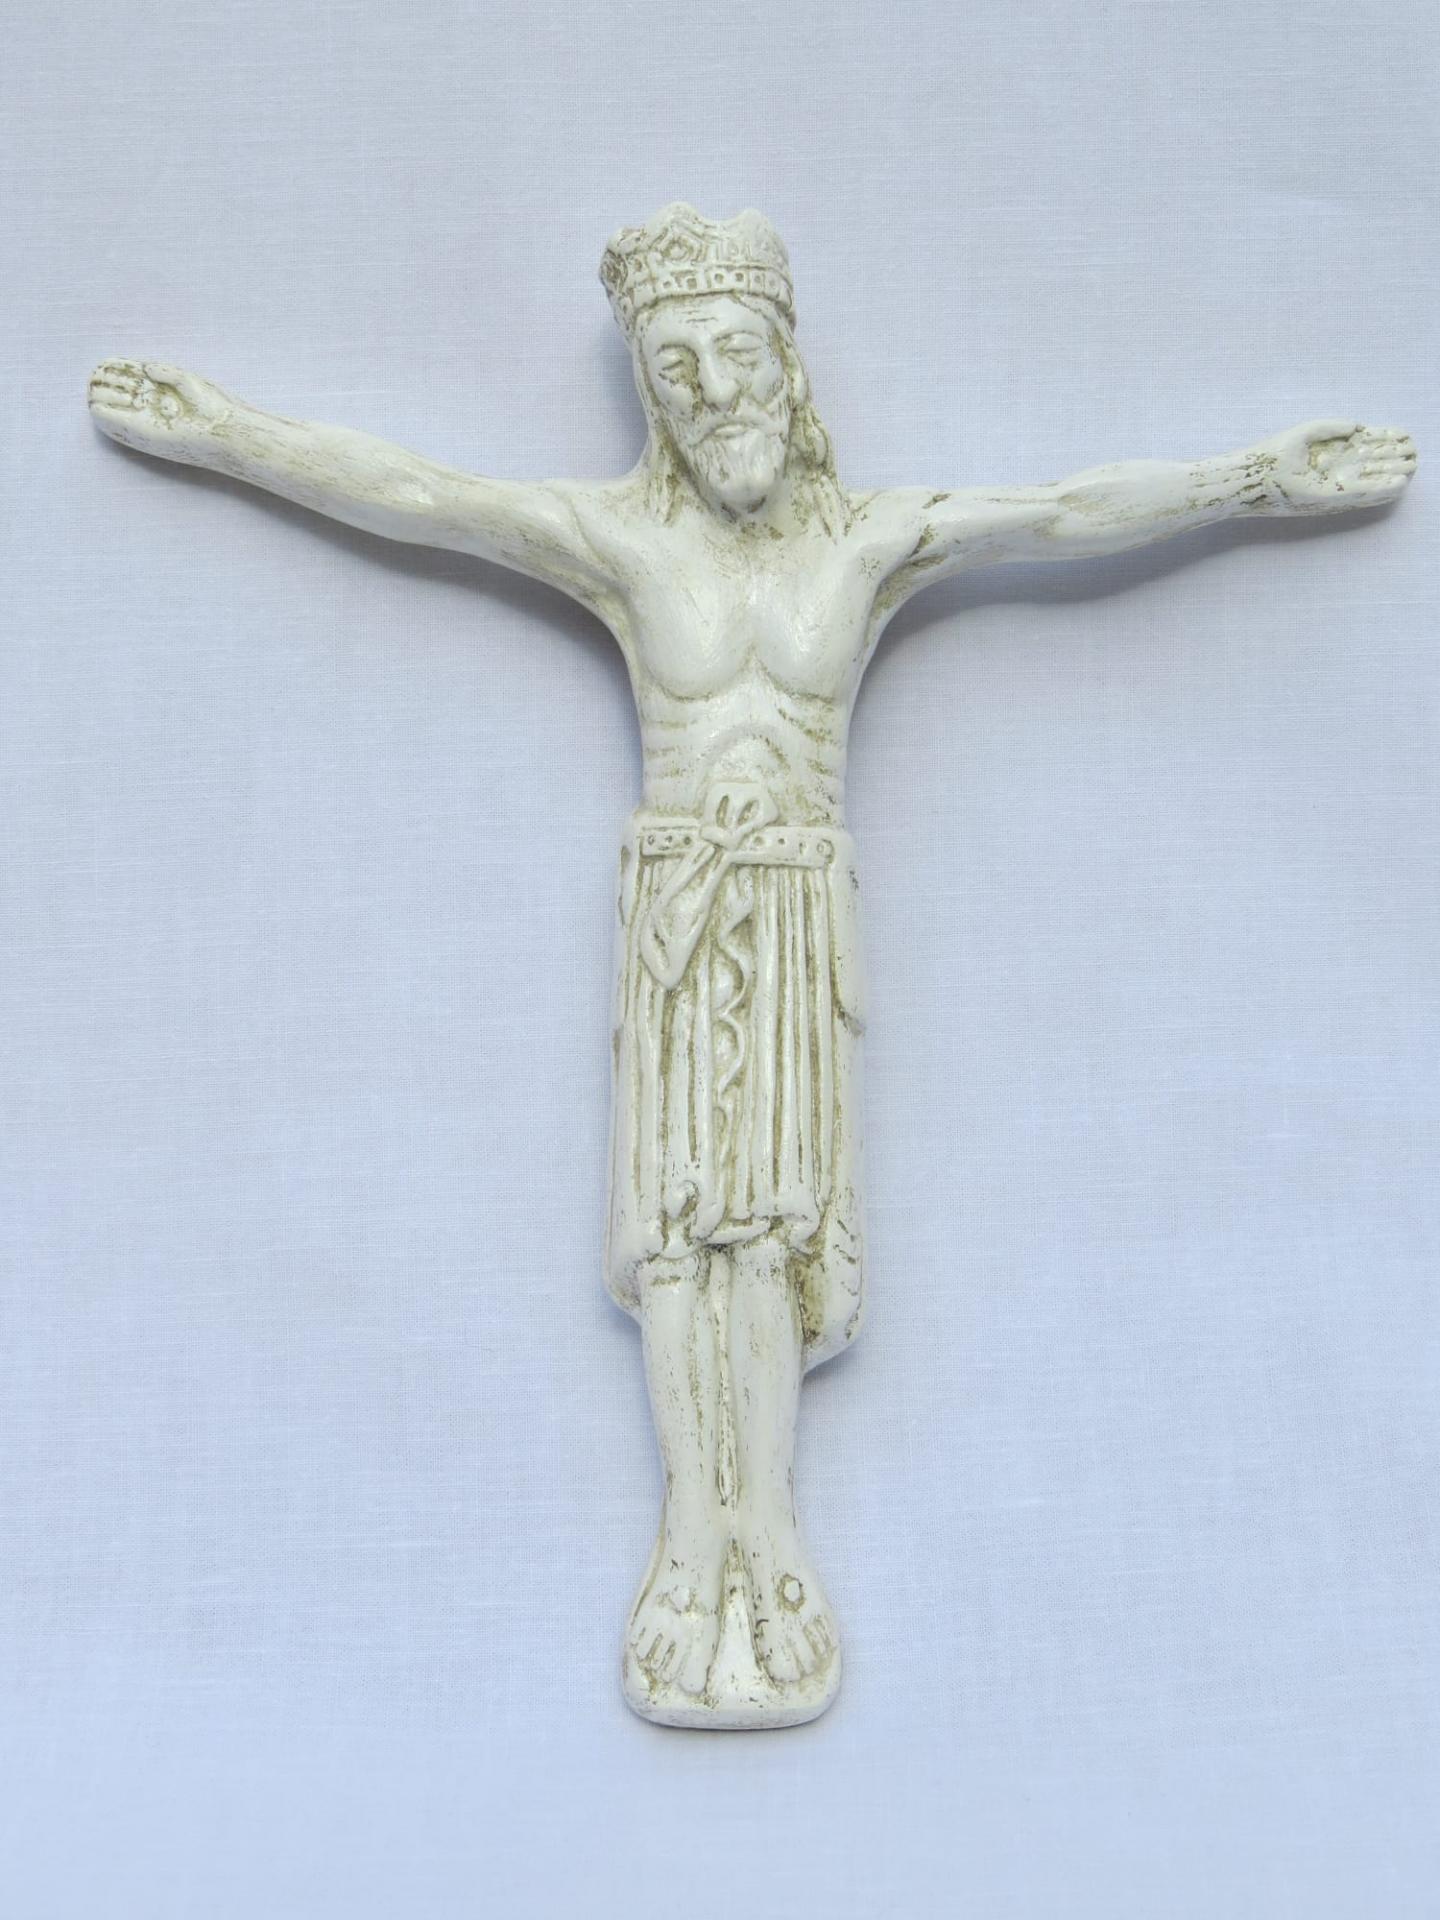 Cristo marfil gótico ( Dominicas del Monasterio de Santo Domingo el Real de Segovia)